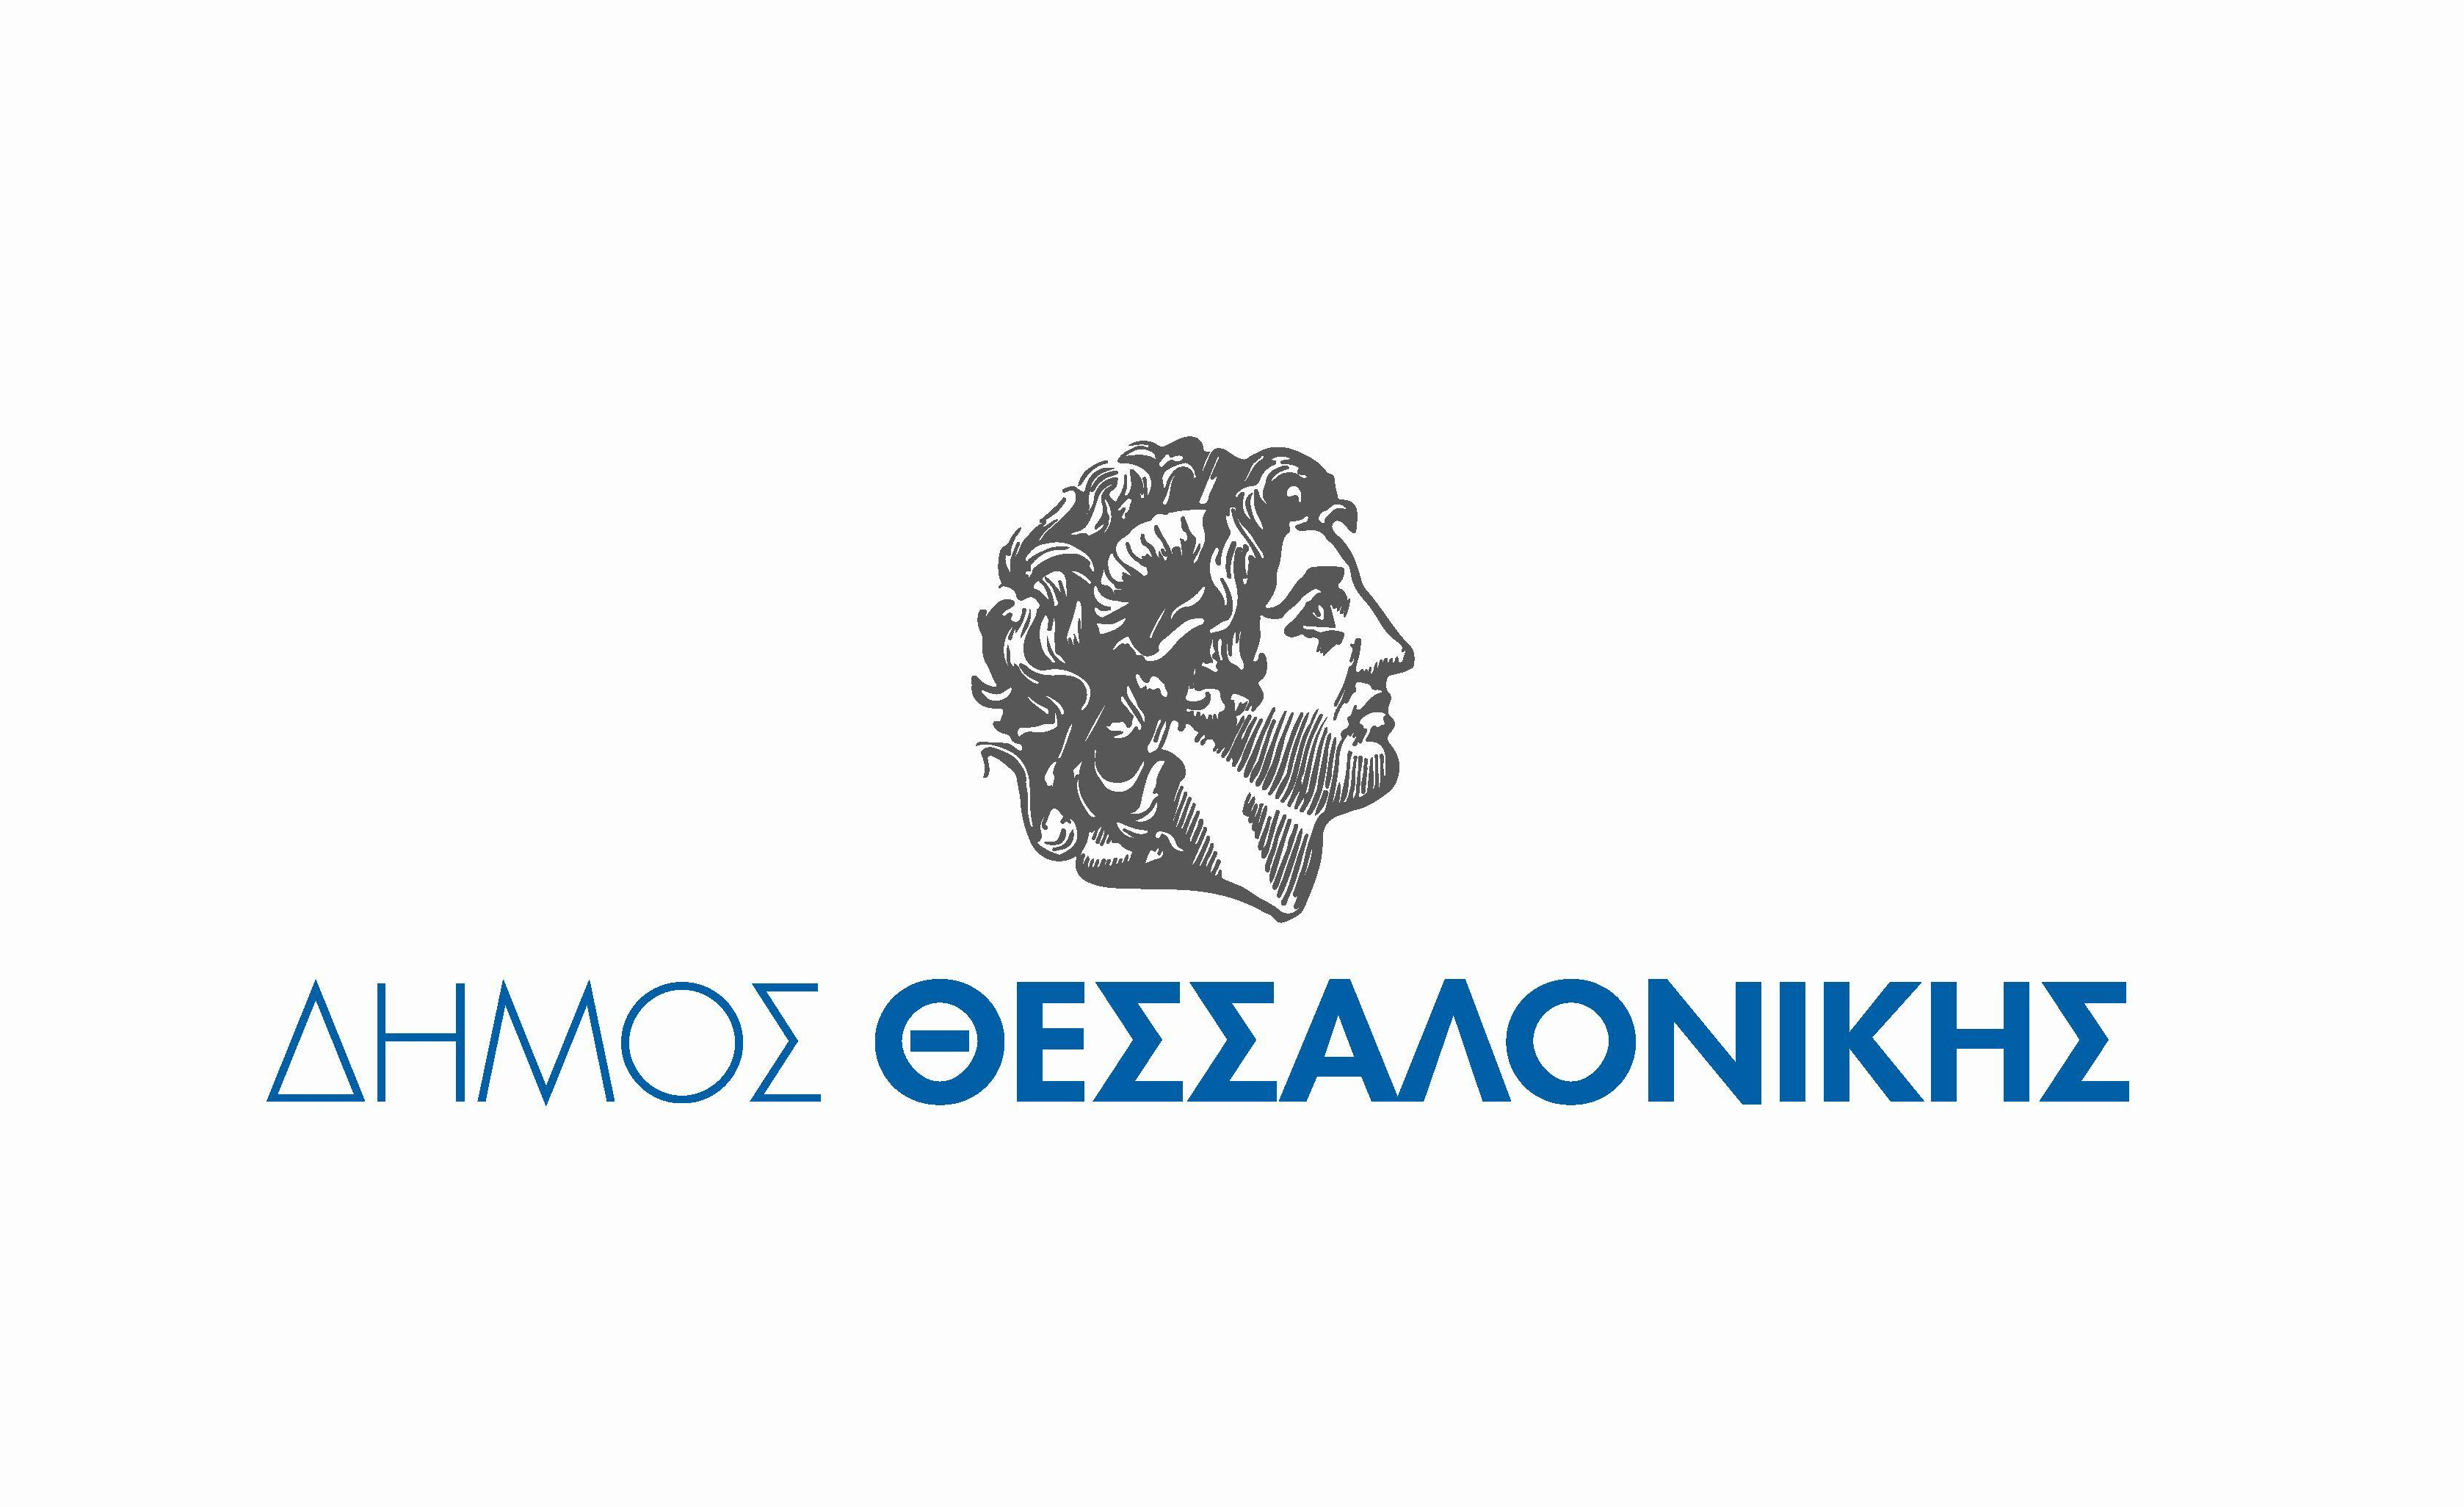 Προμήθεια Αναμνηστικών Ειδών Εκπαιδευτικών Προγραμμάτων – Δήμος Θεσσαλονίκης